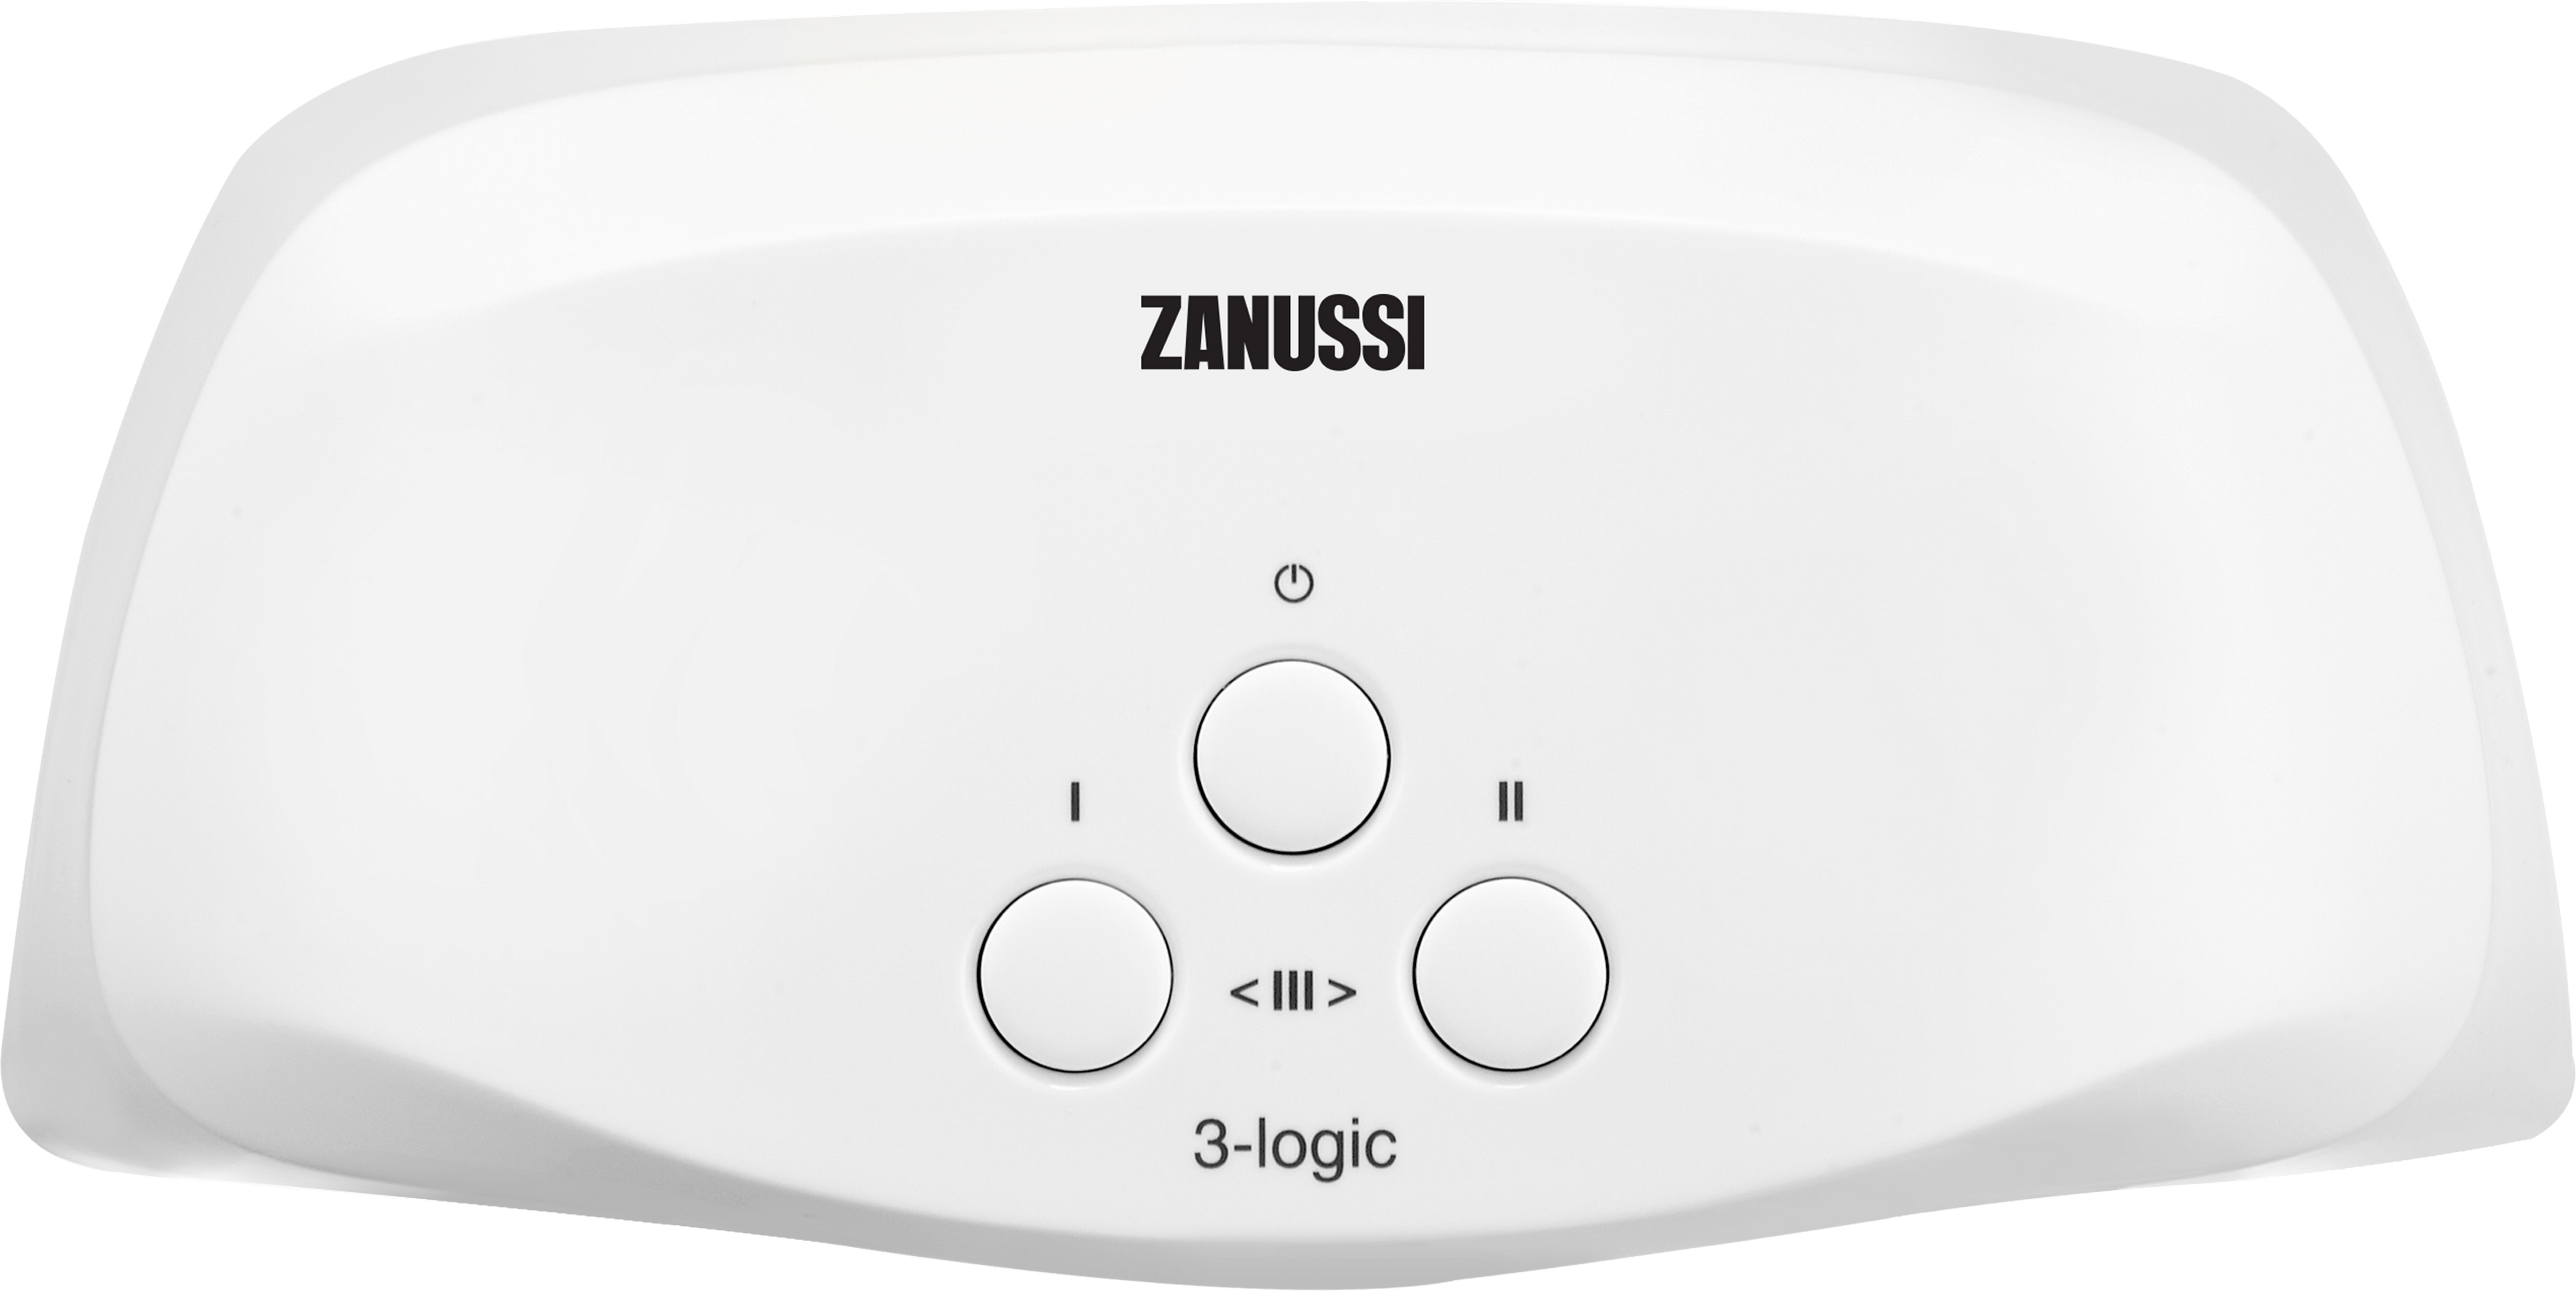 Отзывы проточный водонагреватель Zanussi 3-logic S (3,5 кВт) в Украине